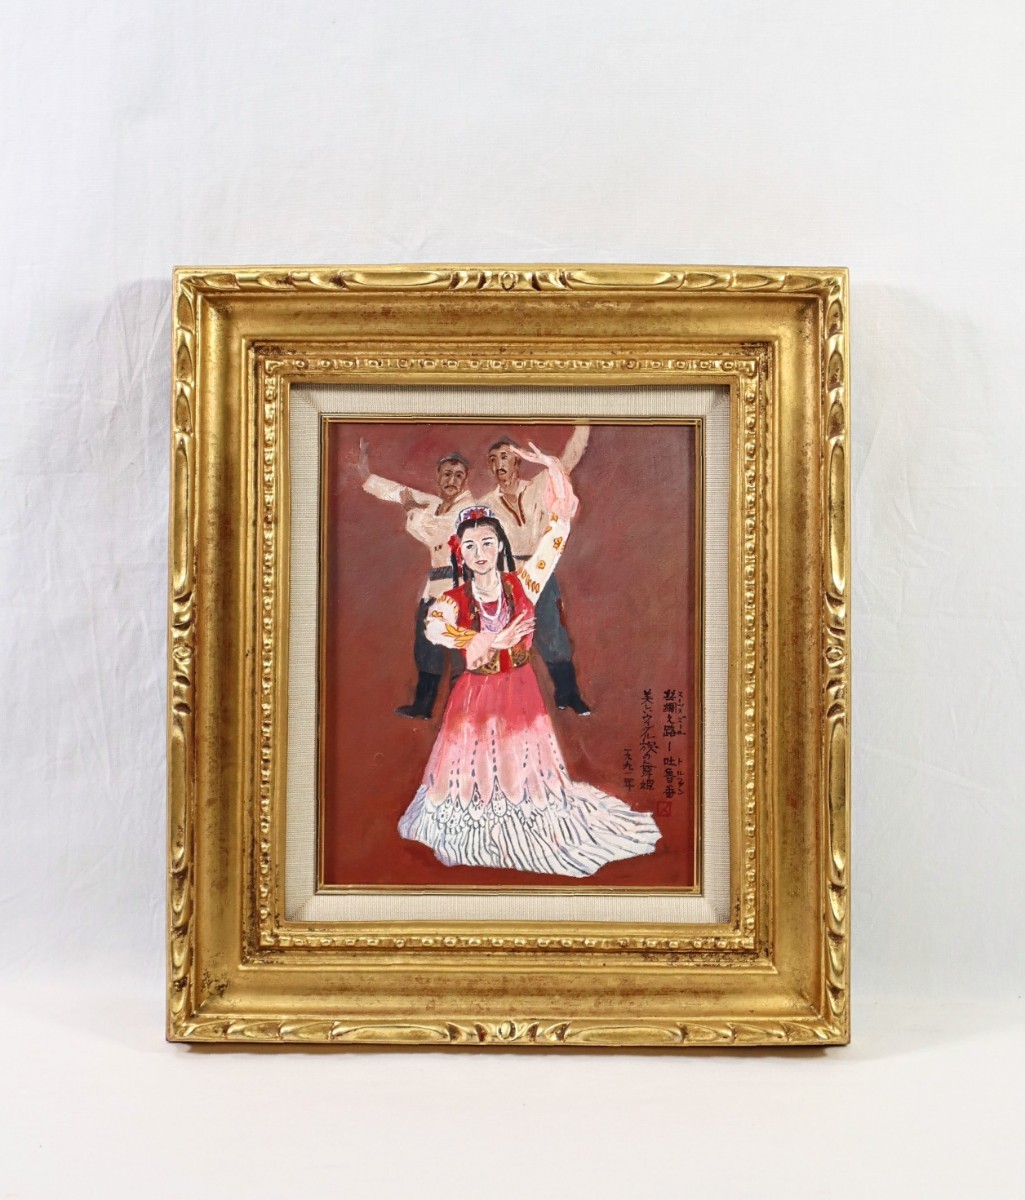 Trabajo genuino de Katsuhito Nakamura., 1991 pintura al óleo Turpan Hermosa bailarina uigur tamaño F3, de la prefectura de Nagasaki, no afiliado, Región Autónoma Uigur de Xinjiang, Porcelana, magnífico baile étnico, 8028, Cuadro, Pintura al óleo, Retratos